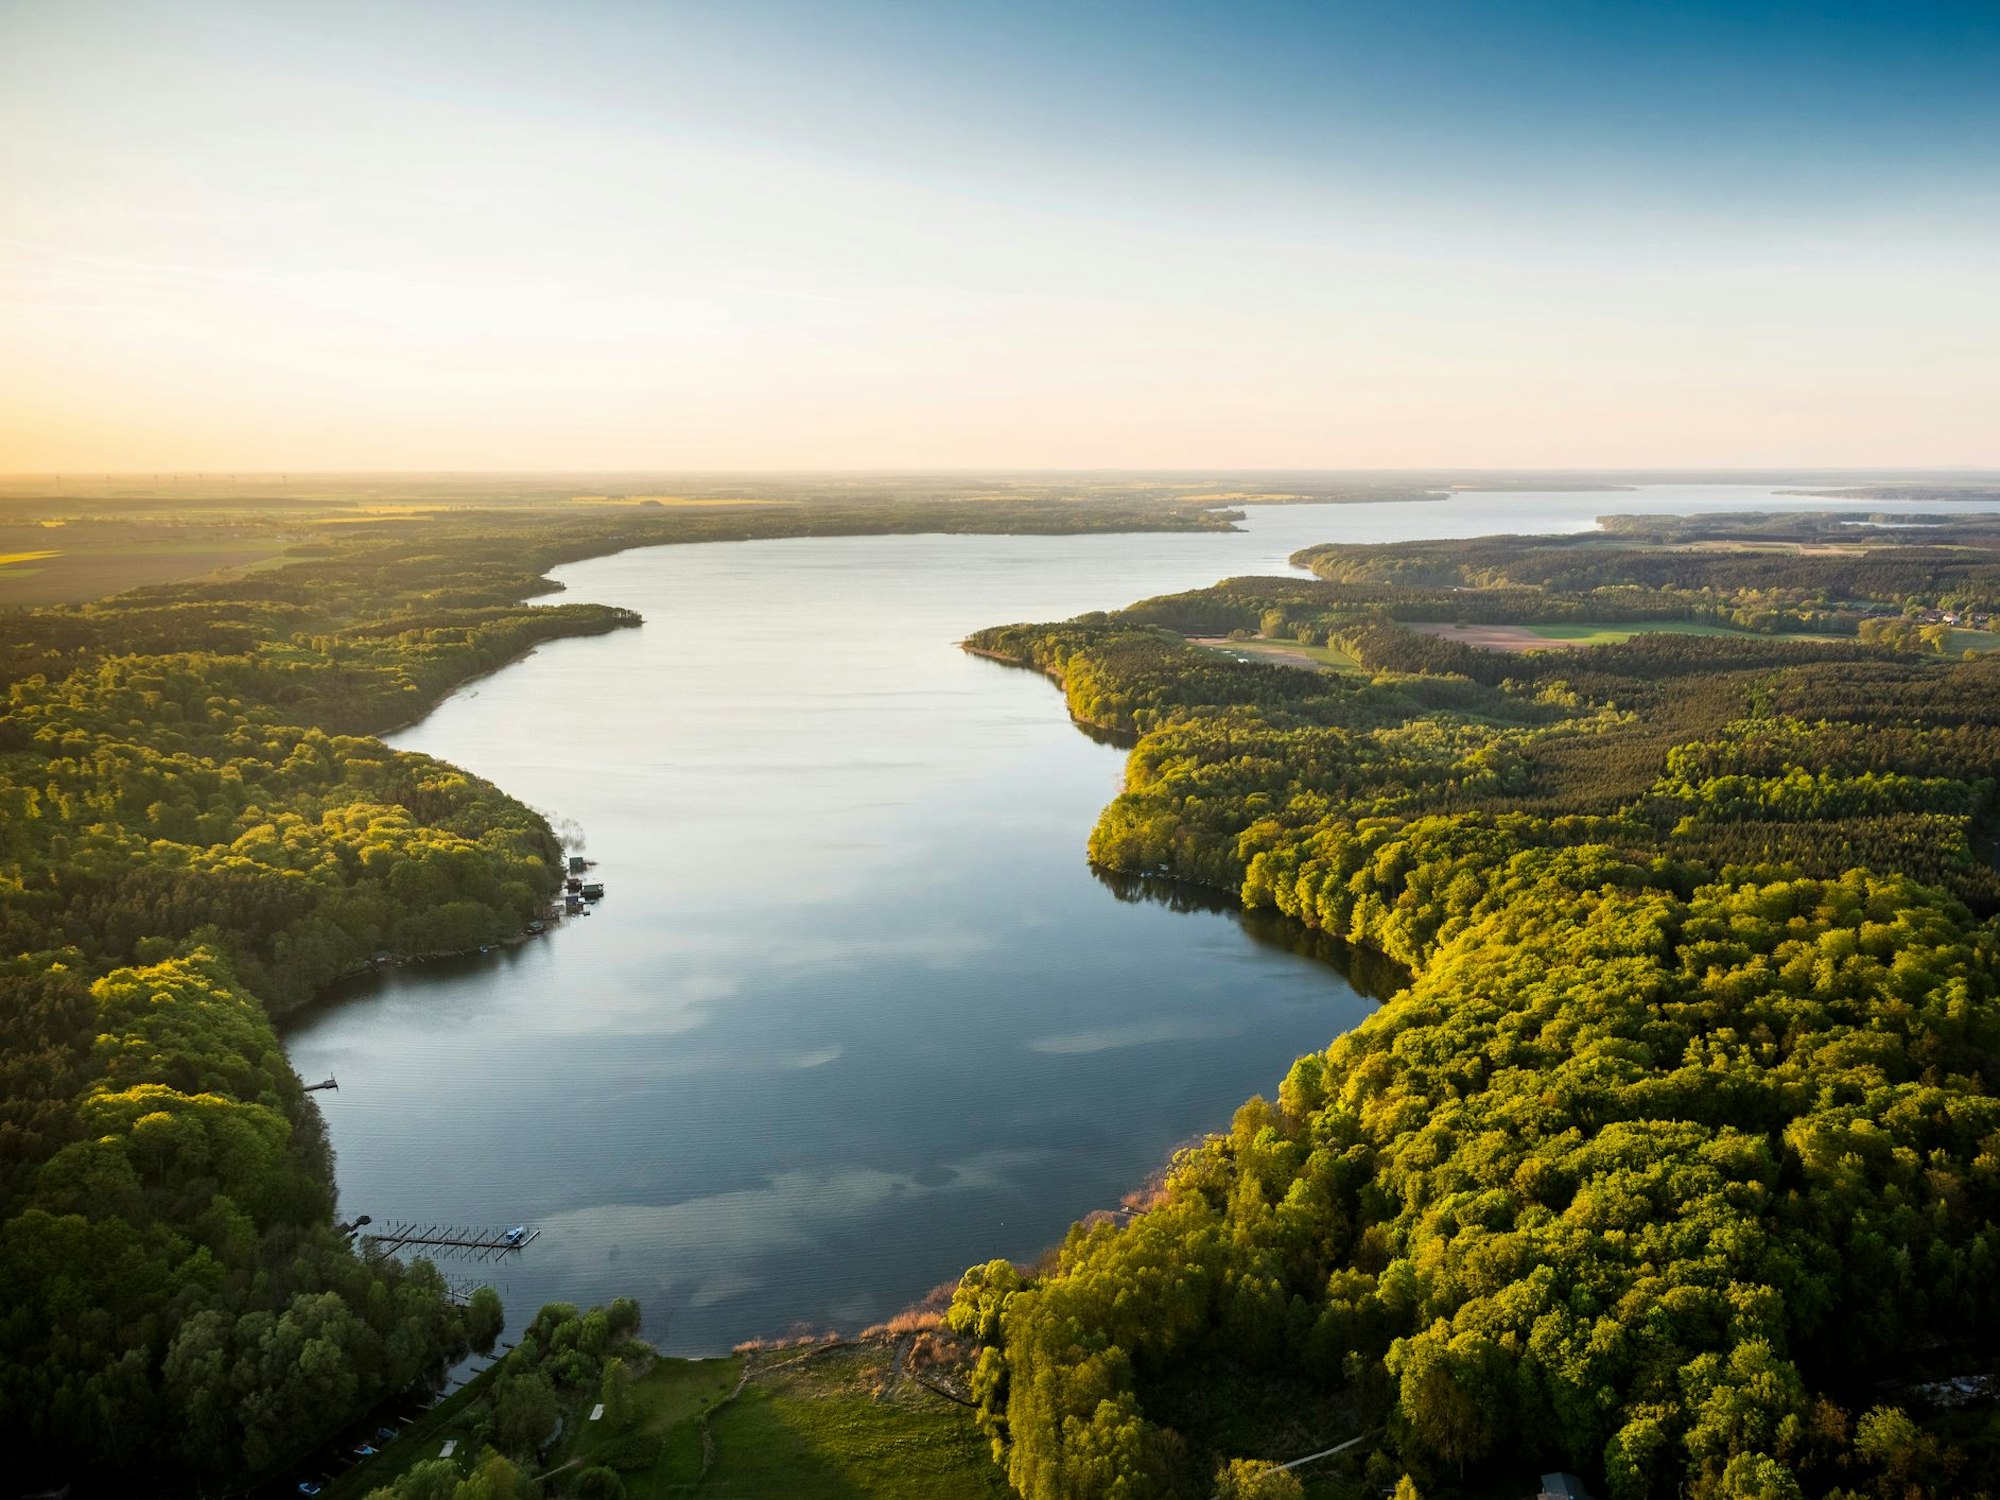 Tagesausflüge in die Natur lohnen sich im Gebiet der Mecklenburgischen Seenplatte.